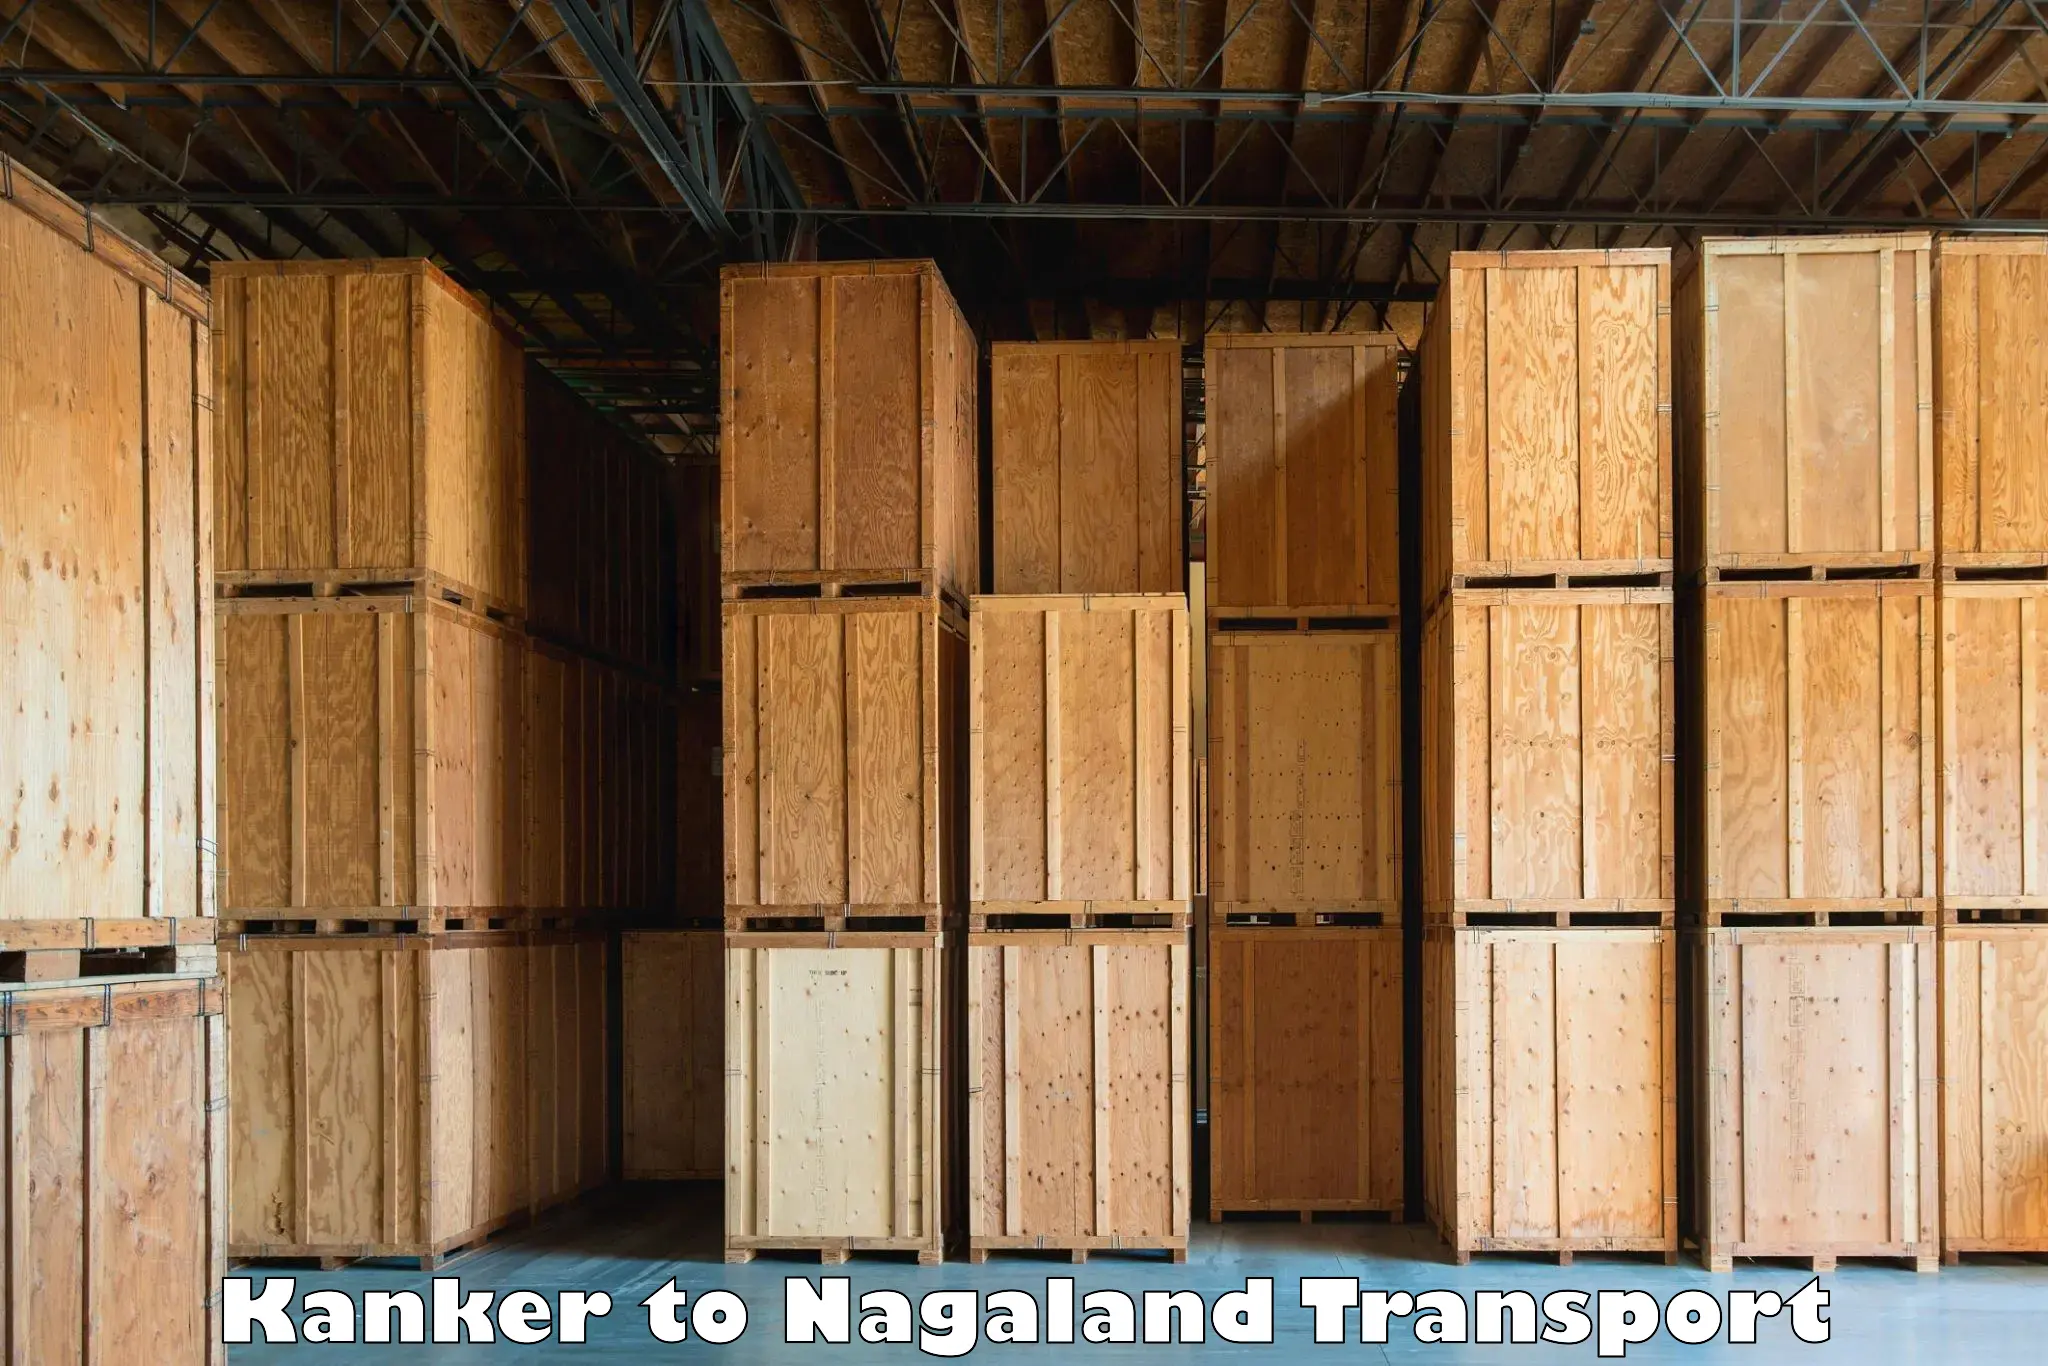 Commercial transport service Kanker to Nagaland